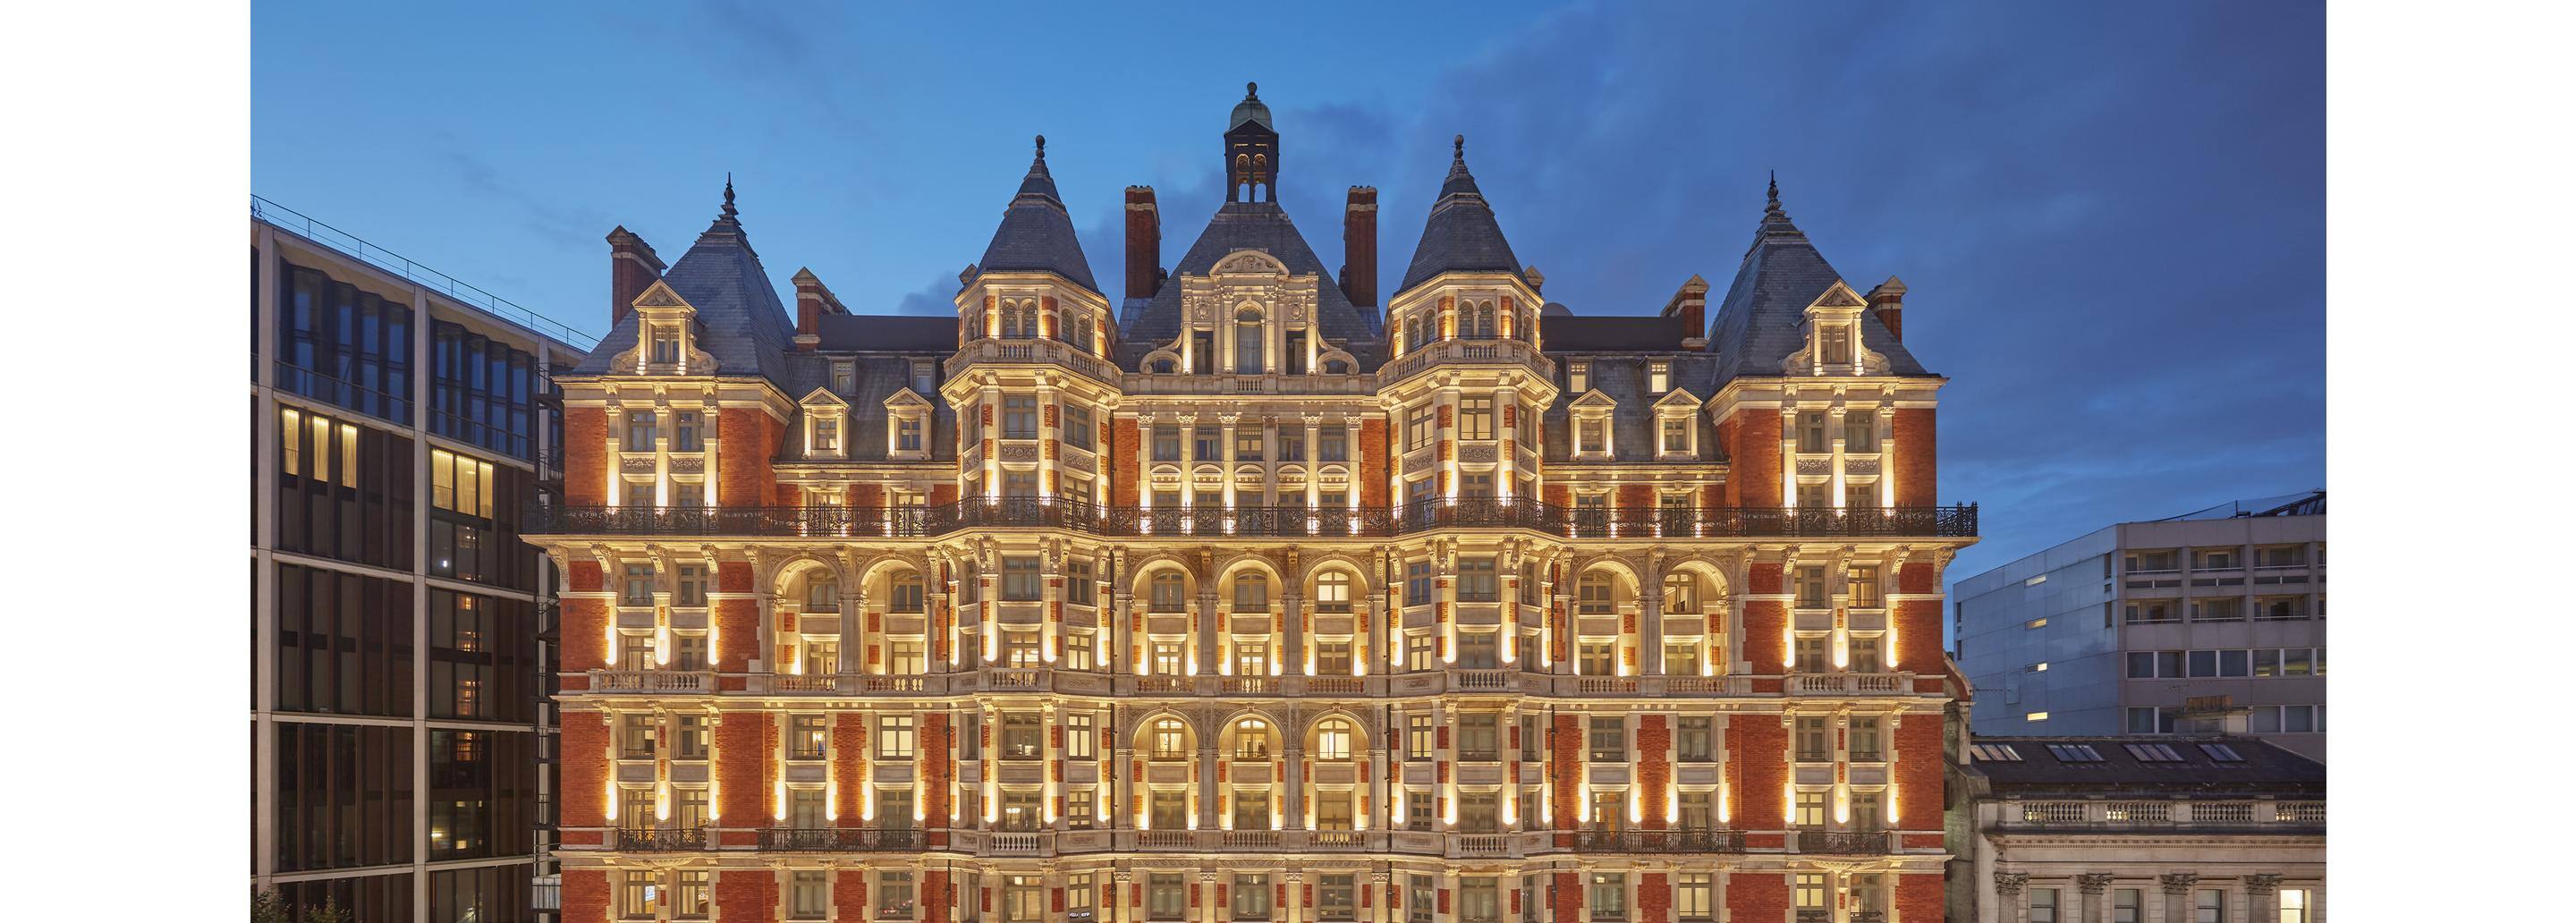 伦敦市政厅万豪酒店点评_伦敦酒店评价|万豪国际酒店官方网站